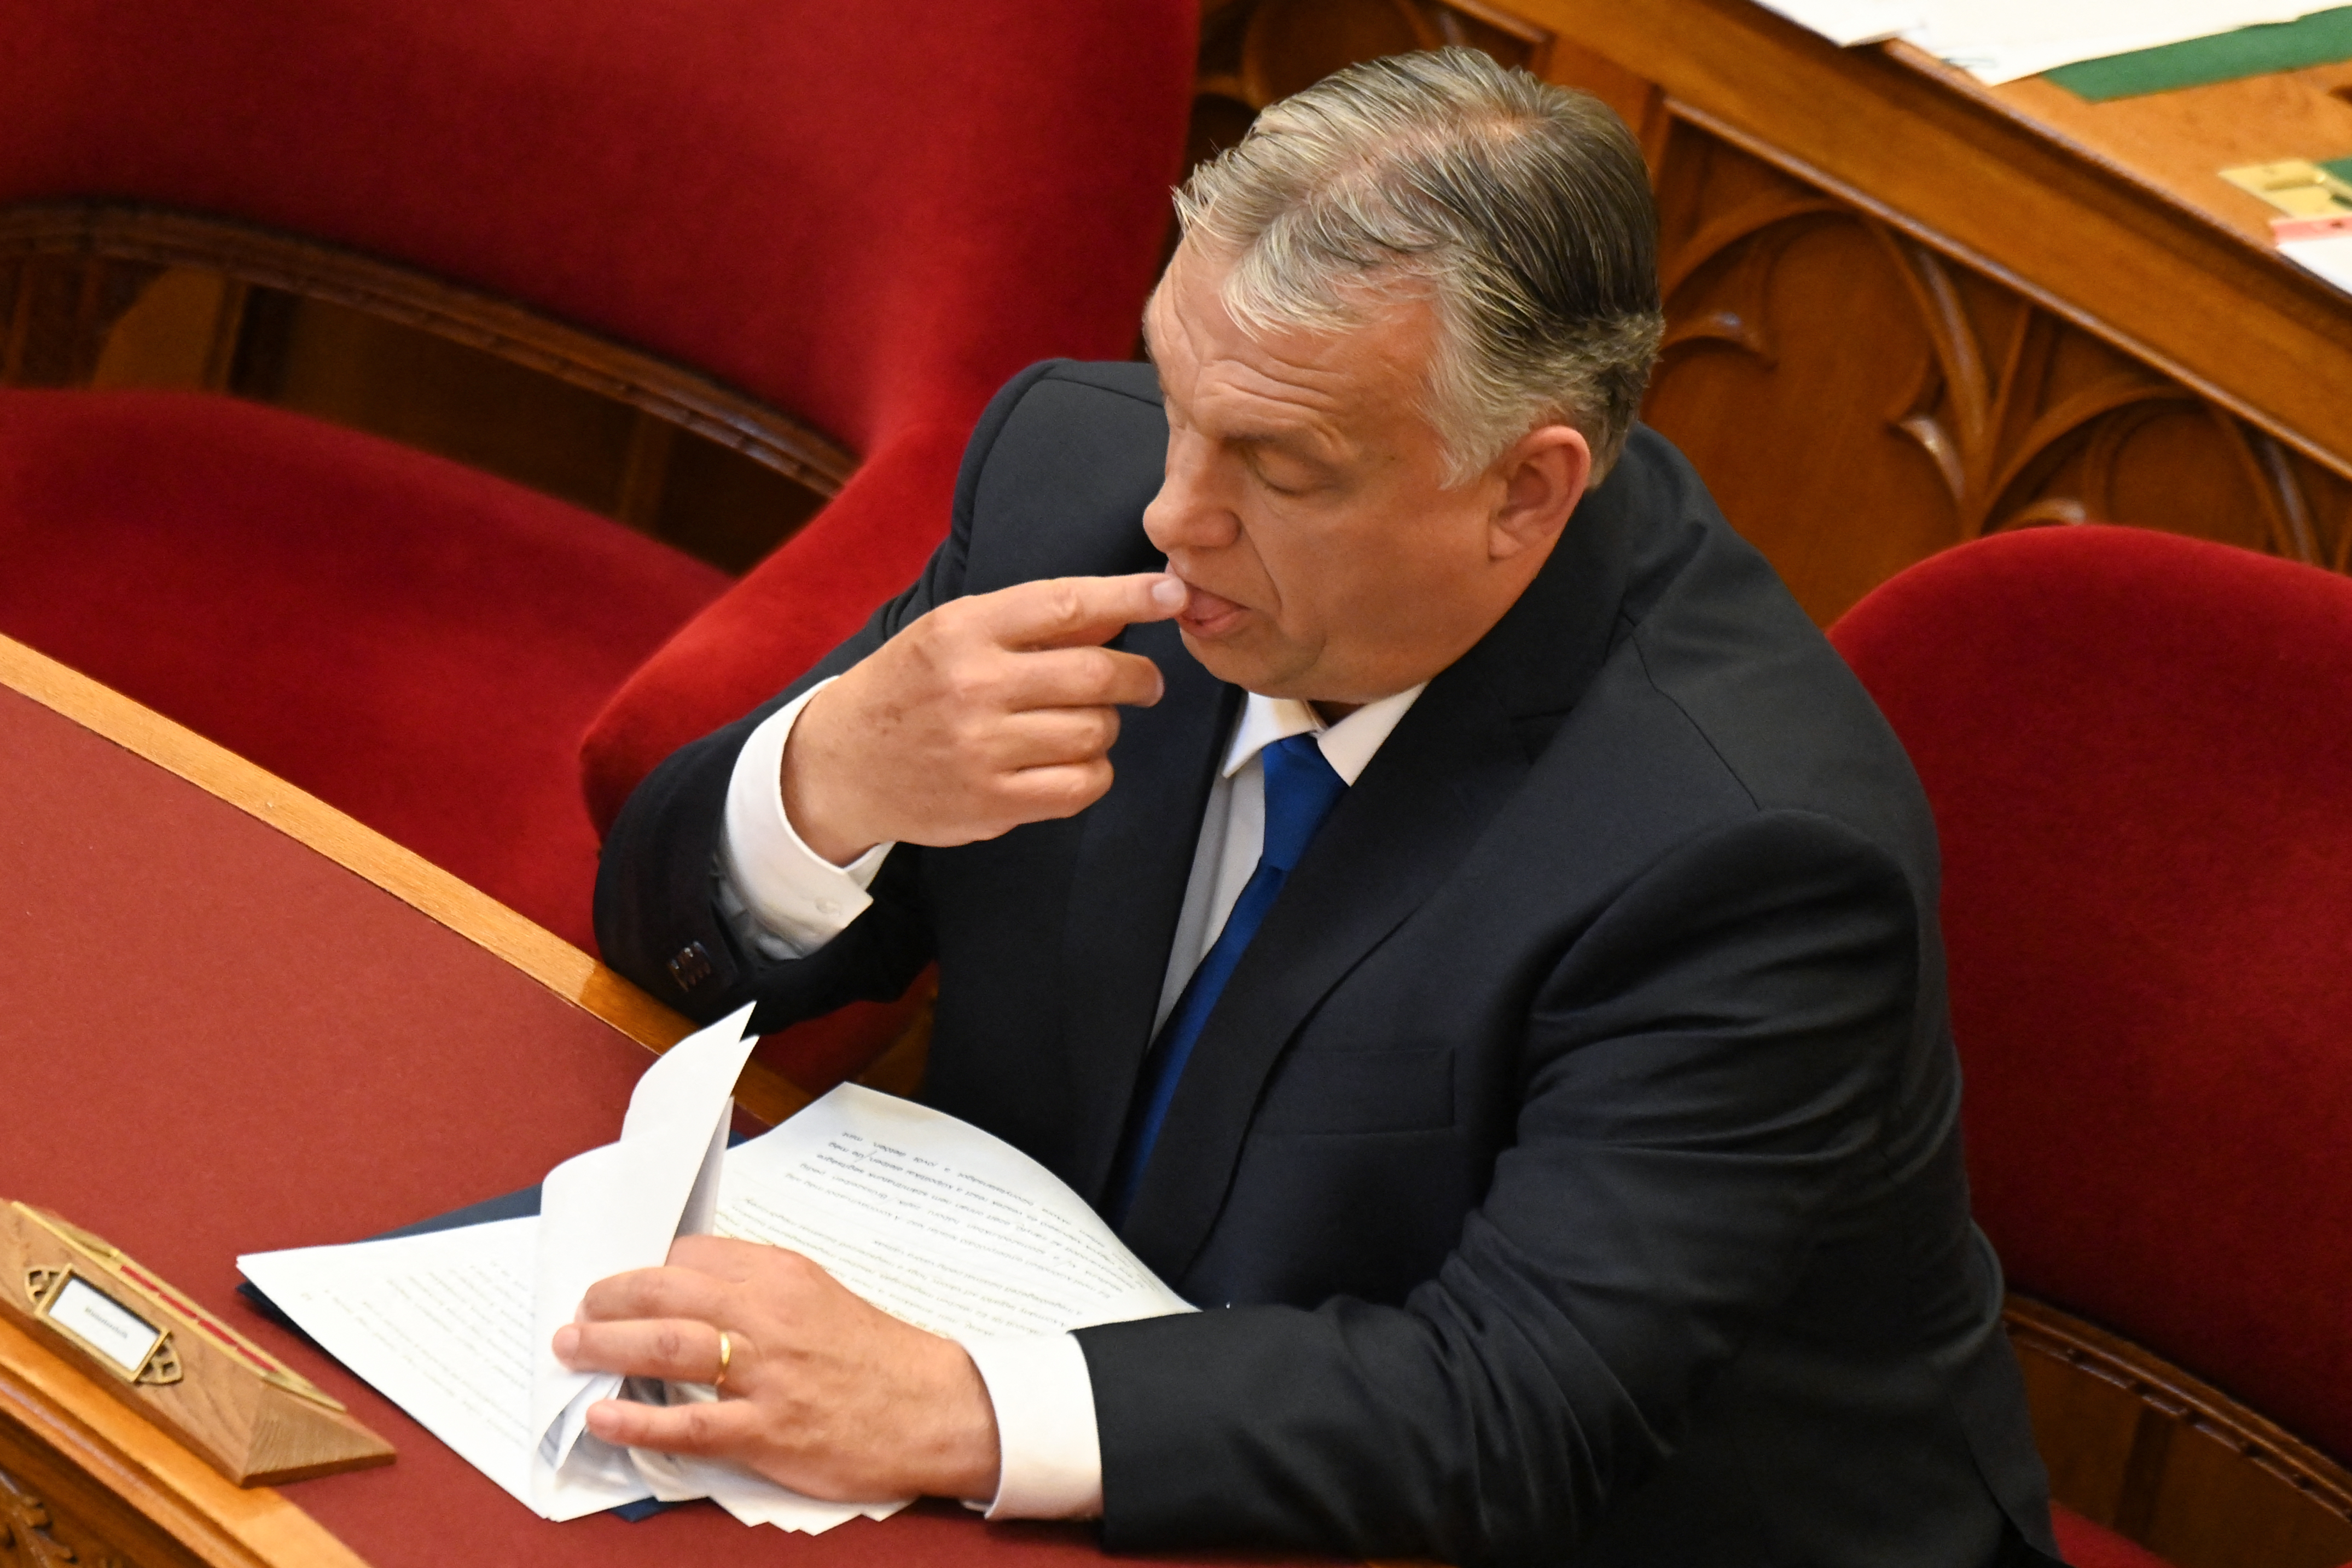 Ezután a törvény helyett Orbán Viktor határozhatja meg a politikai felső vezetők fizetését